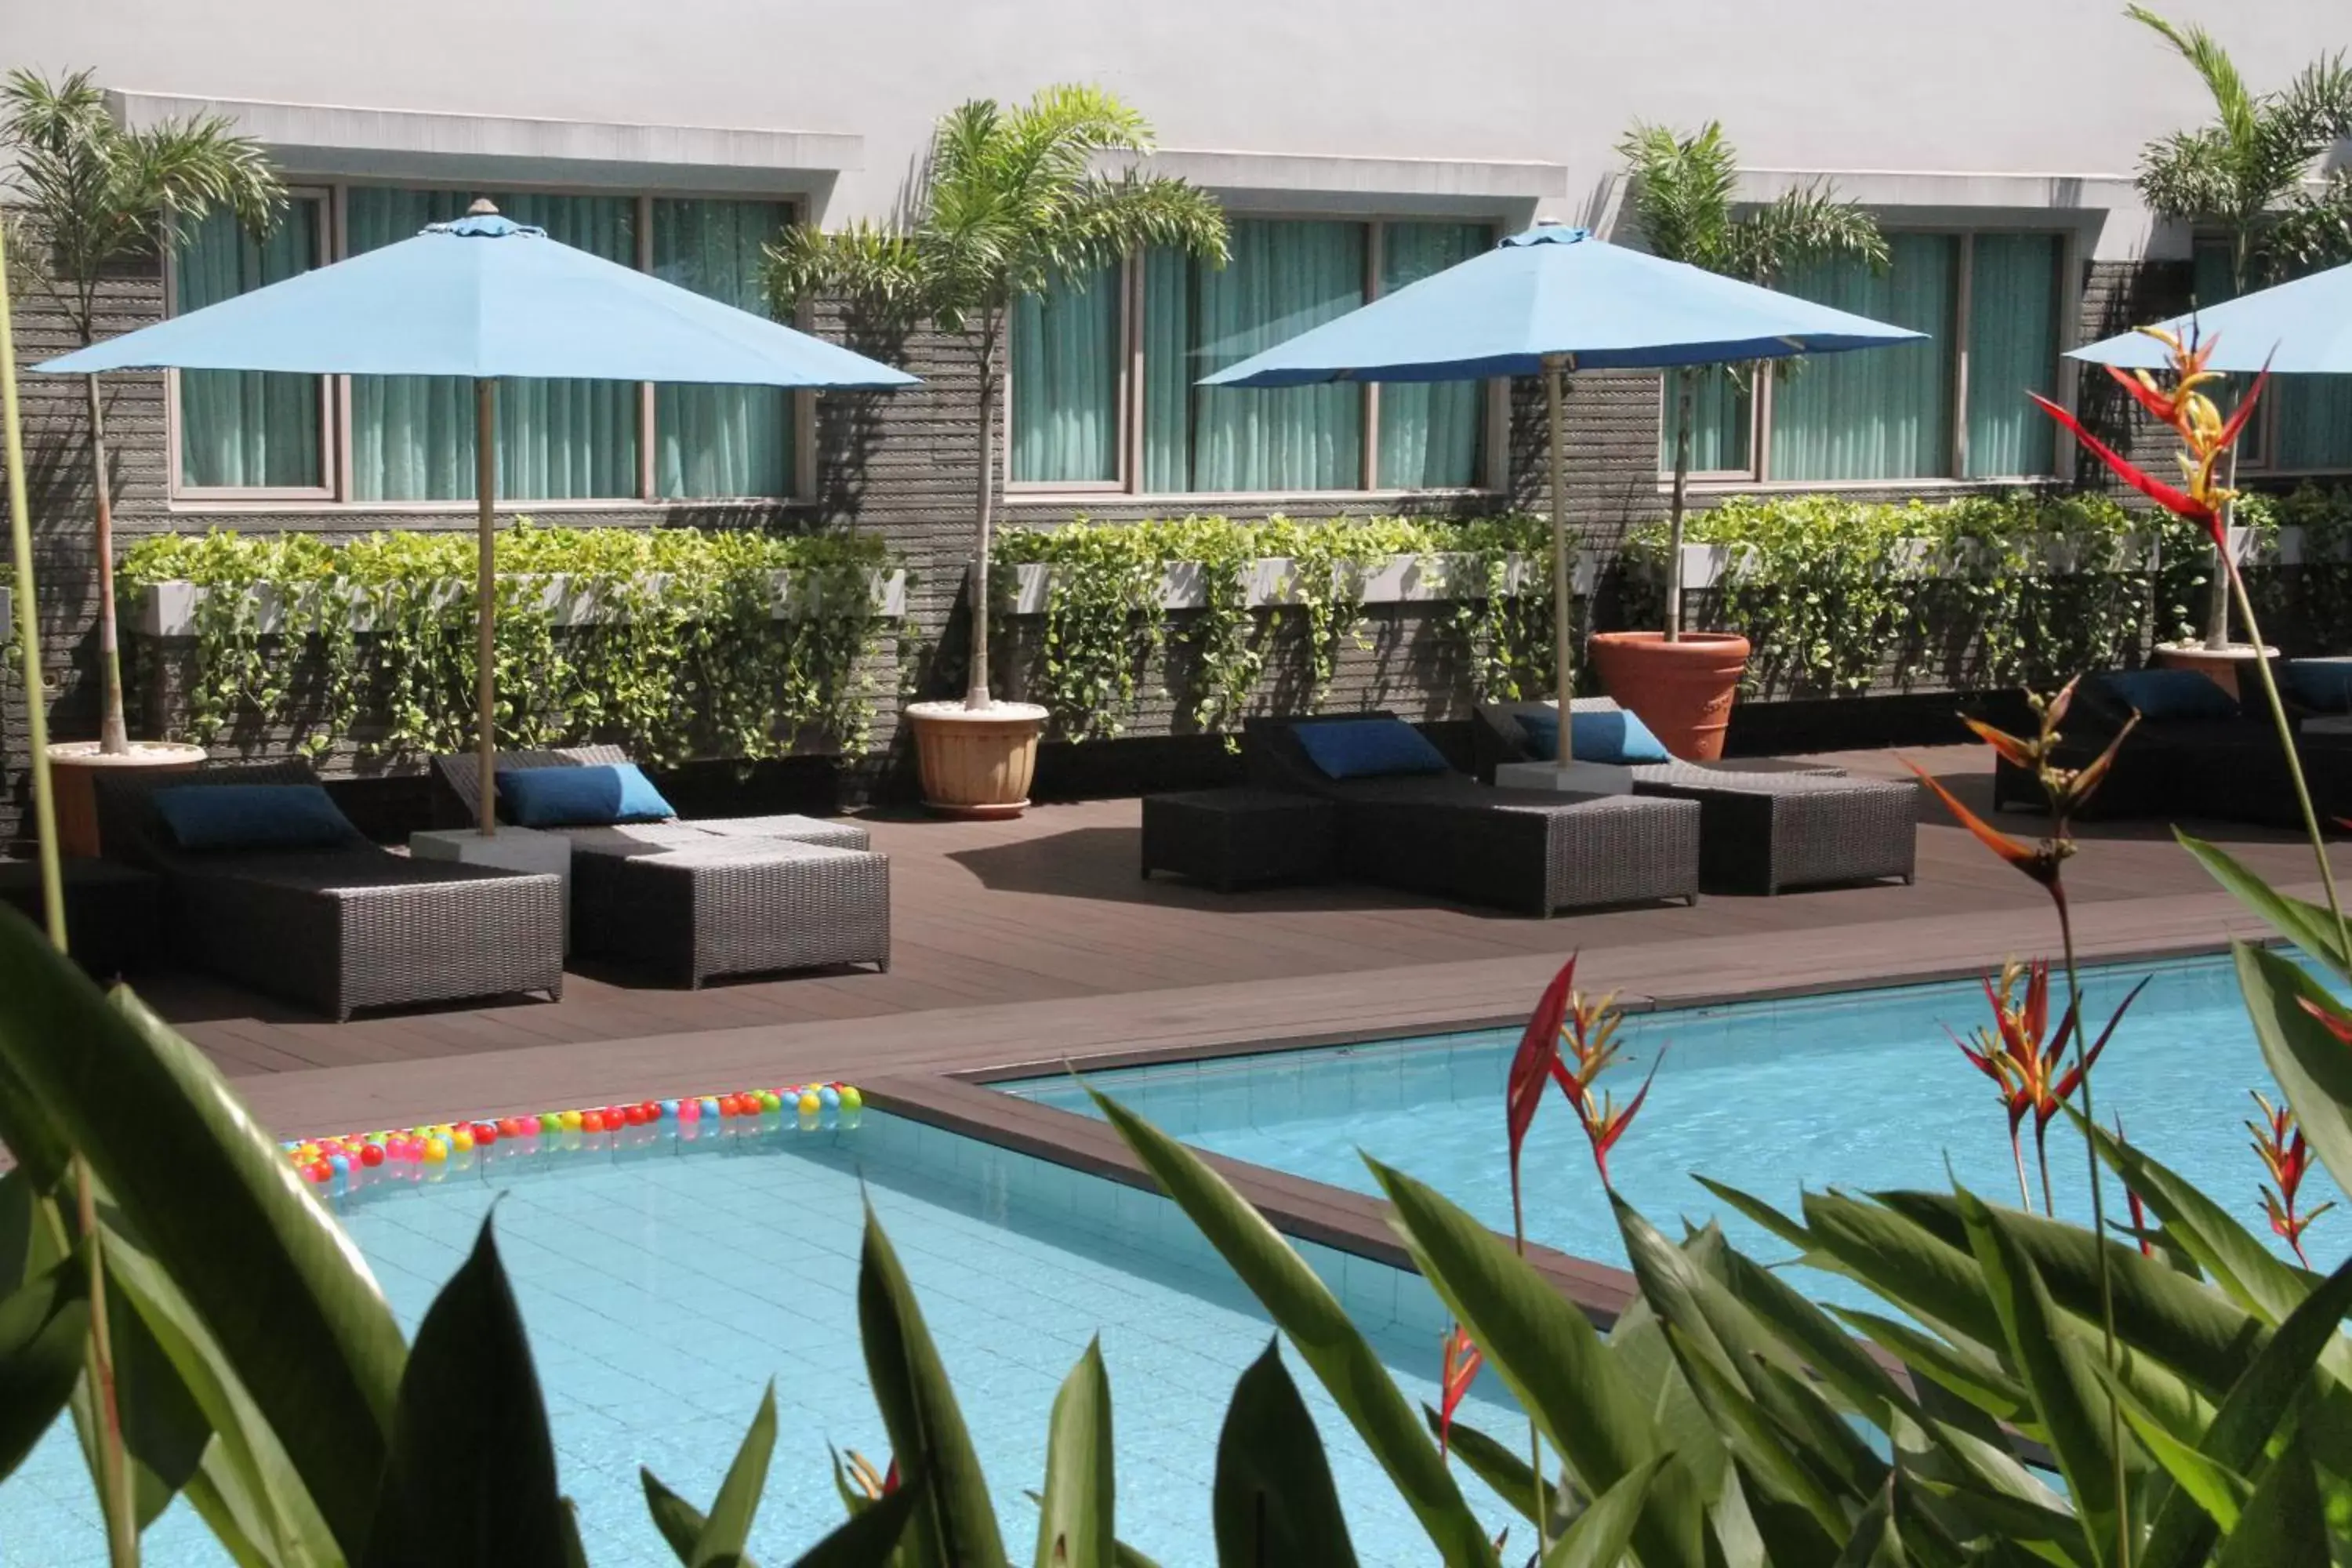 Swimming Pool in ASTON Tropicana Hotel Bandung